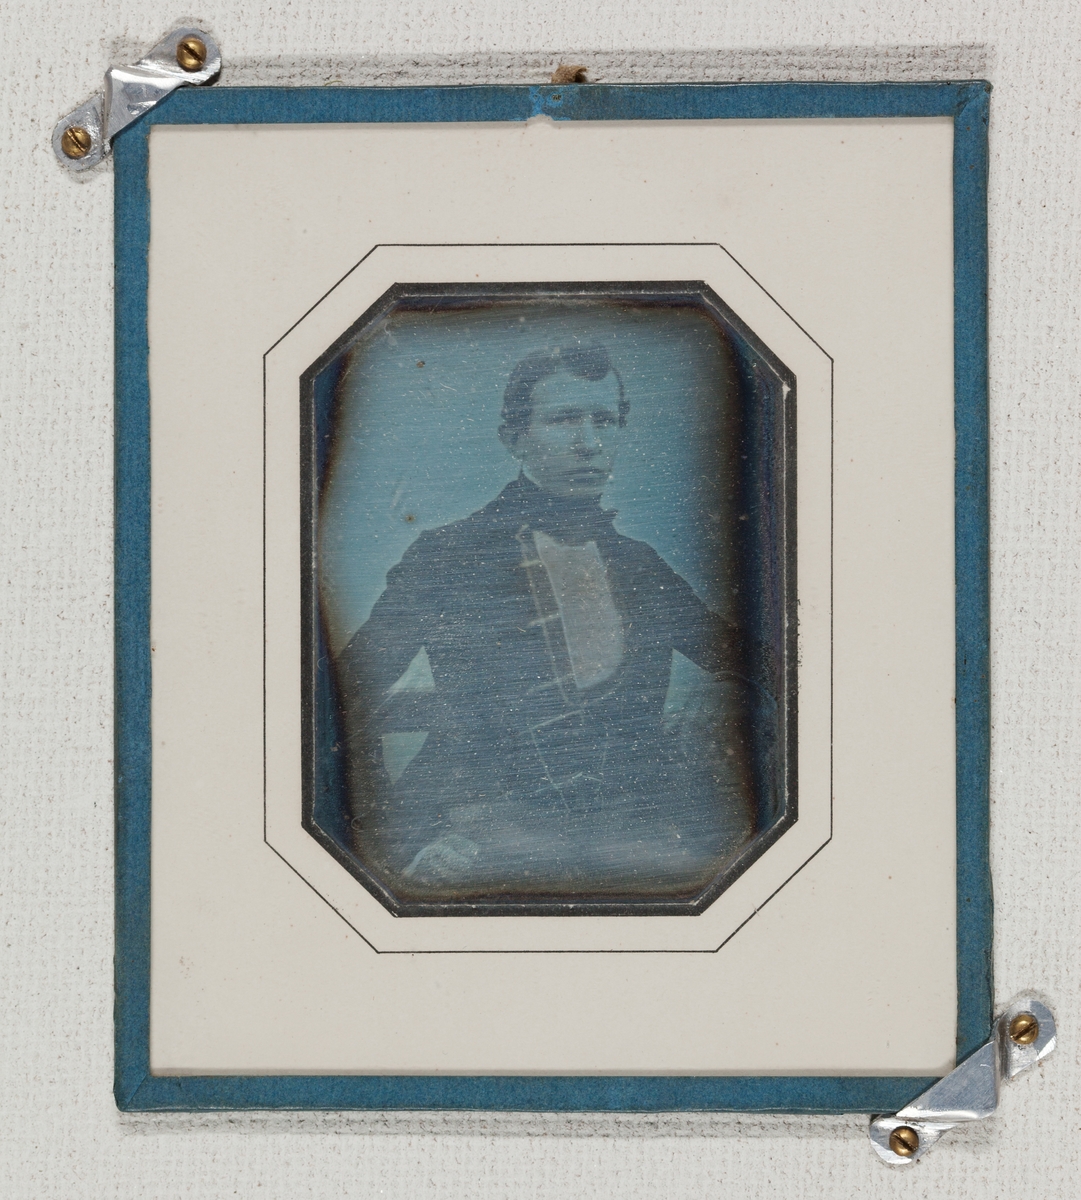 Undervisningsmaterial. Exempel på äldre fotografiska förfaranden. Daguerreotyp. Porträtt av okänd man. Tidigt 1840-tal. Porträttet är troligen taget utomhus av kringresande fotograf.